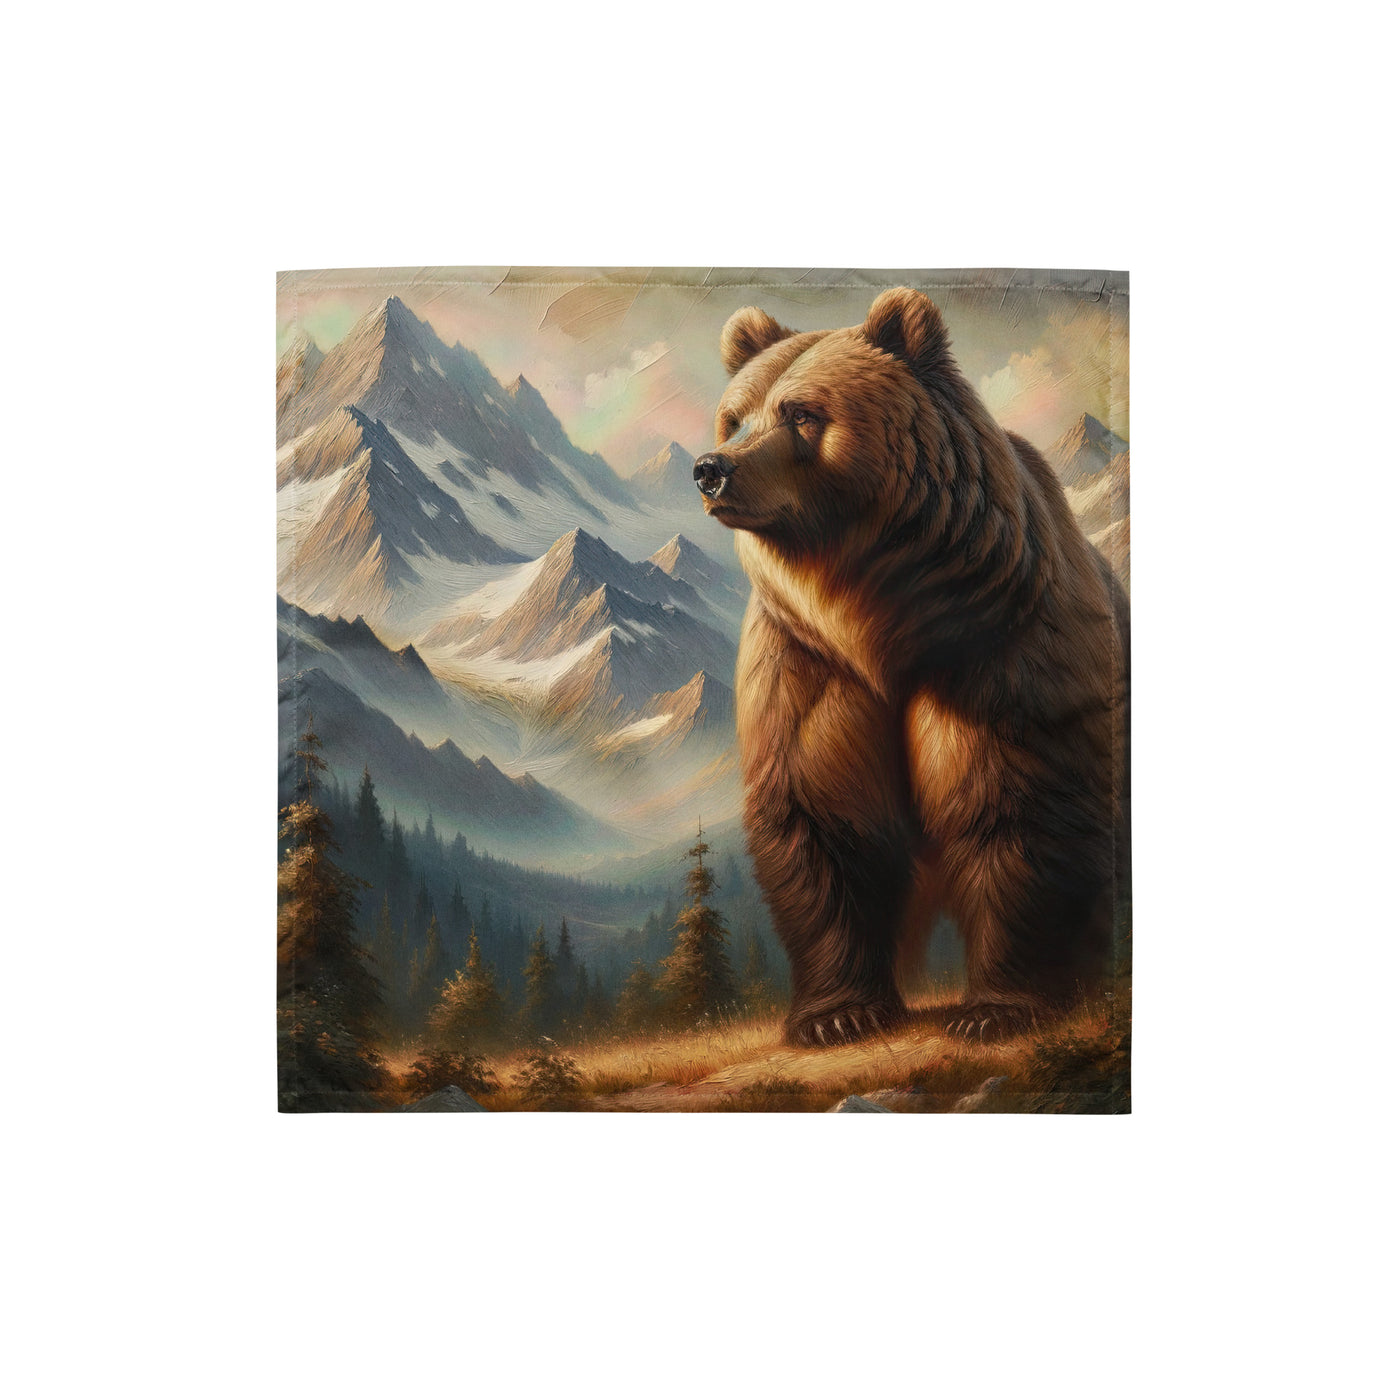 Ölgemälde eines königlichen Bären vor der majestätischen Alpenkulisse - Bandana (All-Over Print) camping xxx yyy zzz S